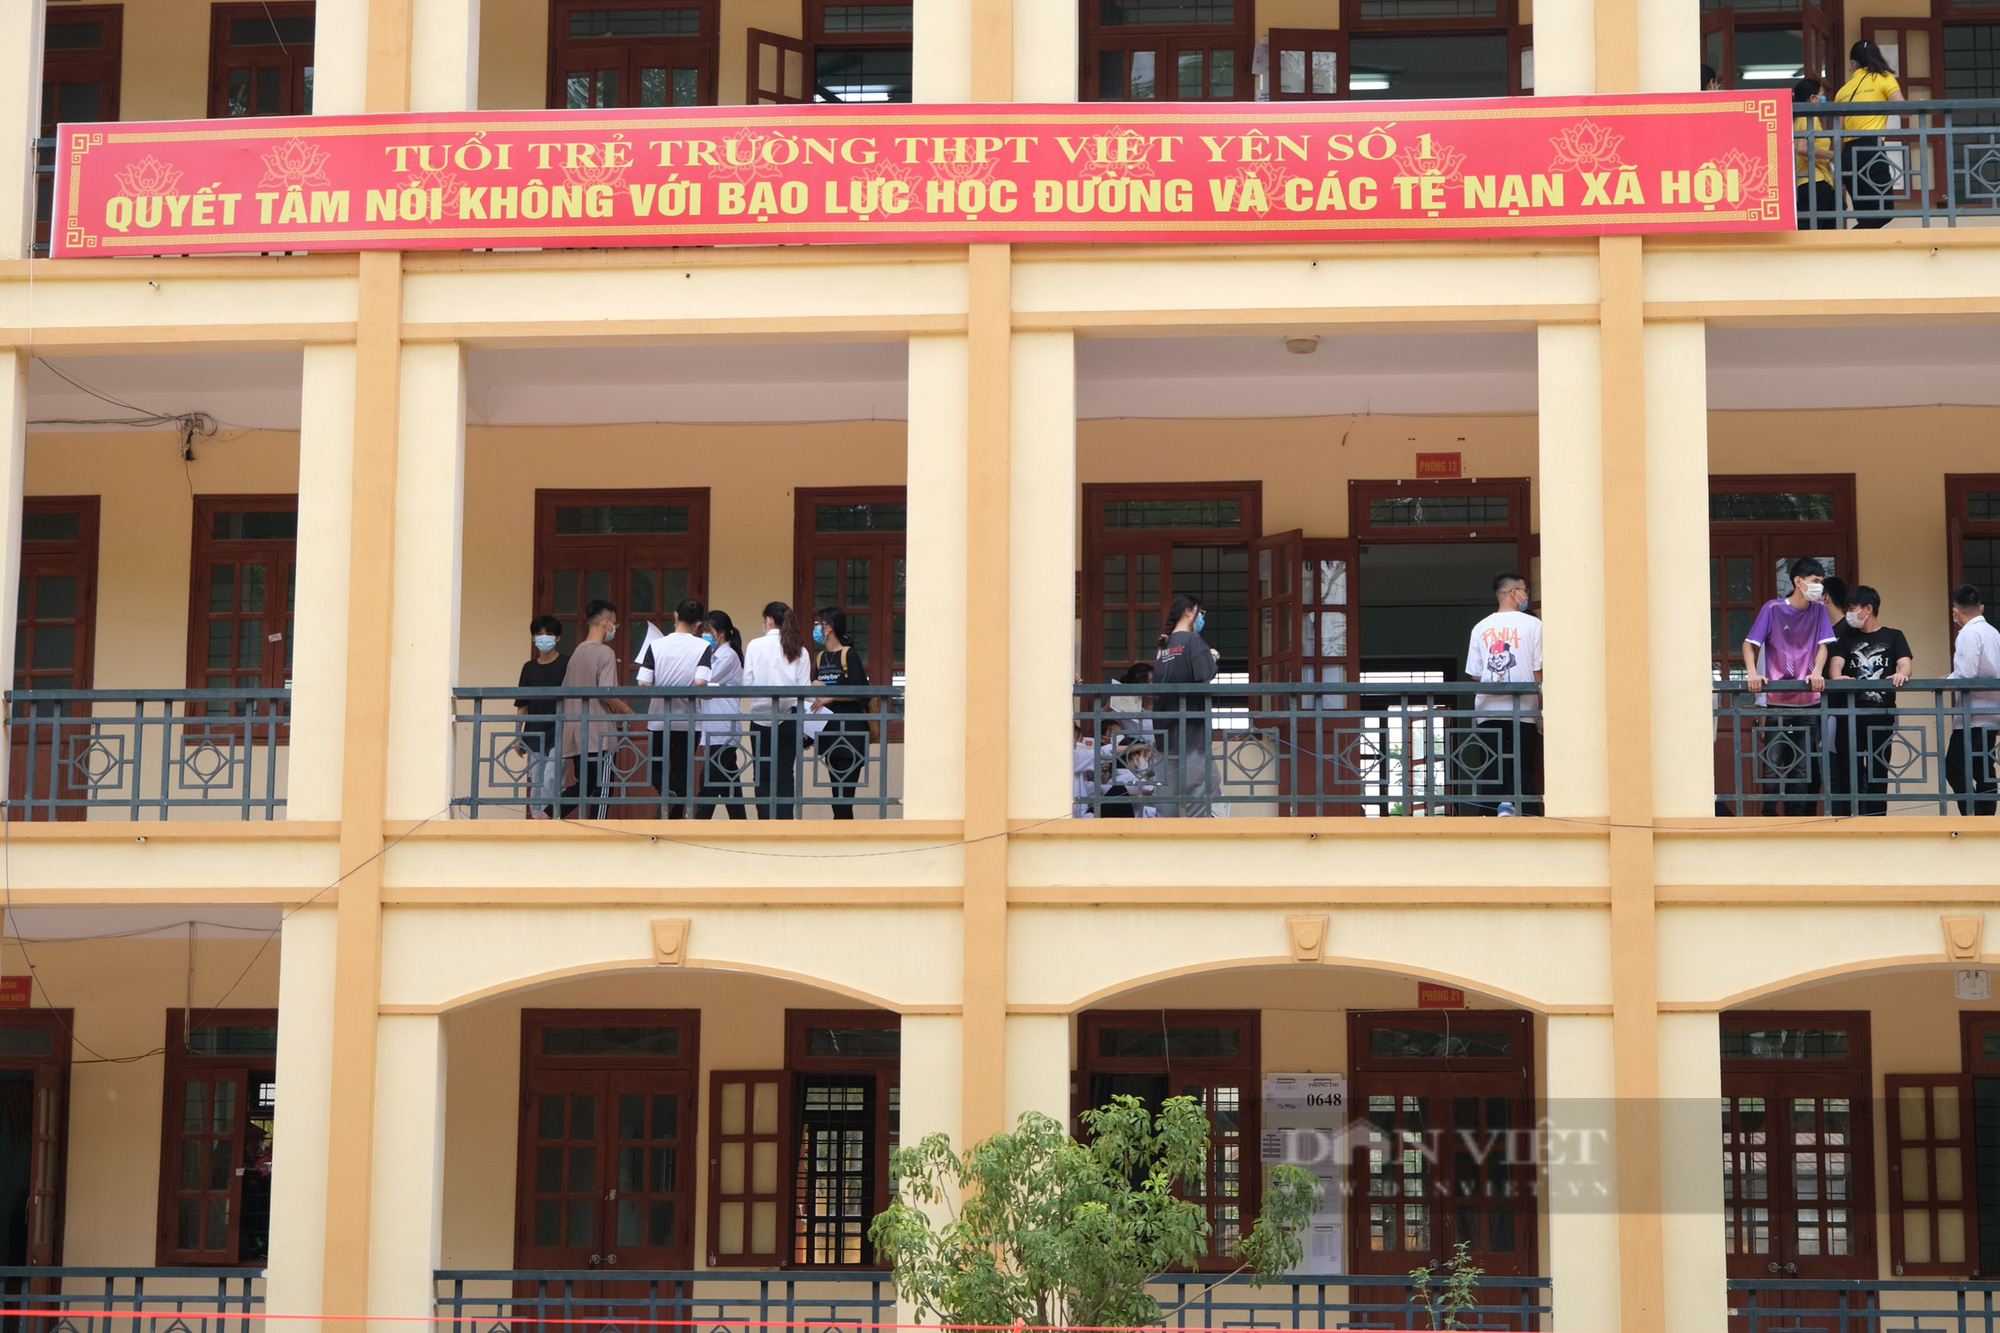 Bắc Giang: Lấy mẫu xét nghiệm Covid-19 cho giáo viên, học sinh trước kỳ thi tốt nghiệp THPT tại tâm dịch Việt Yên - Ảnh 11.